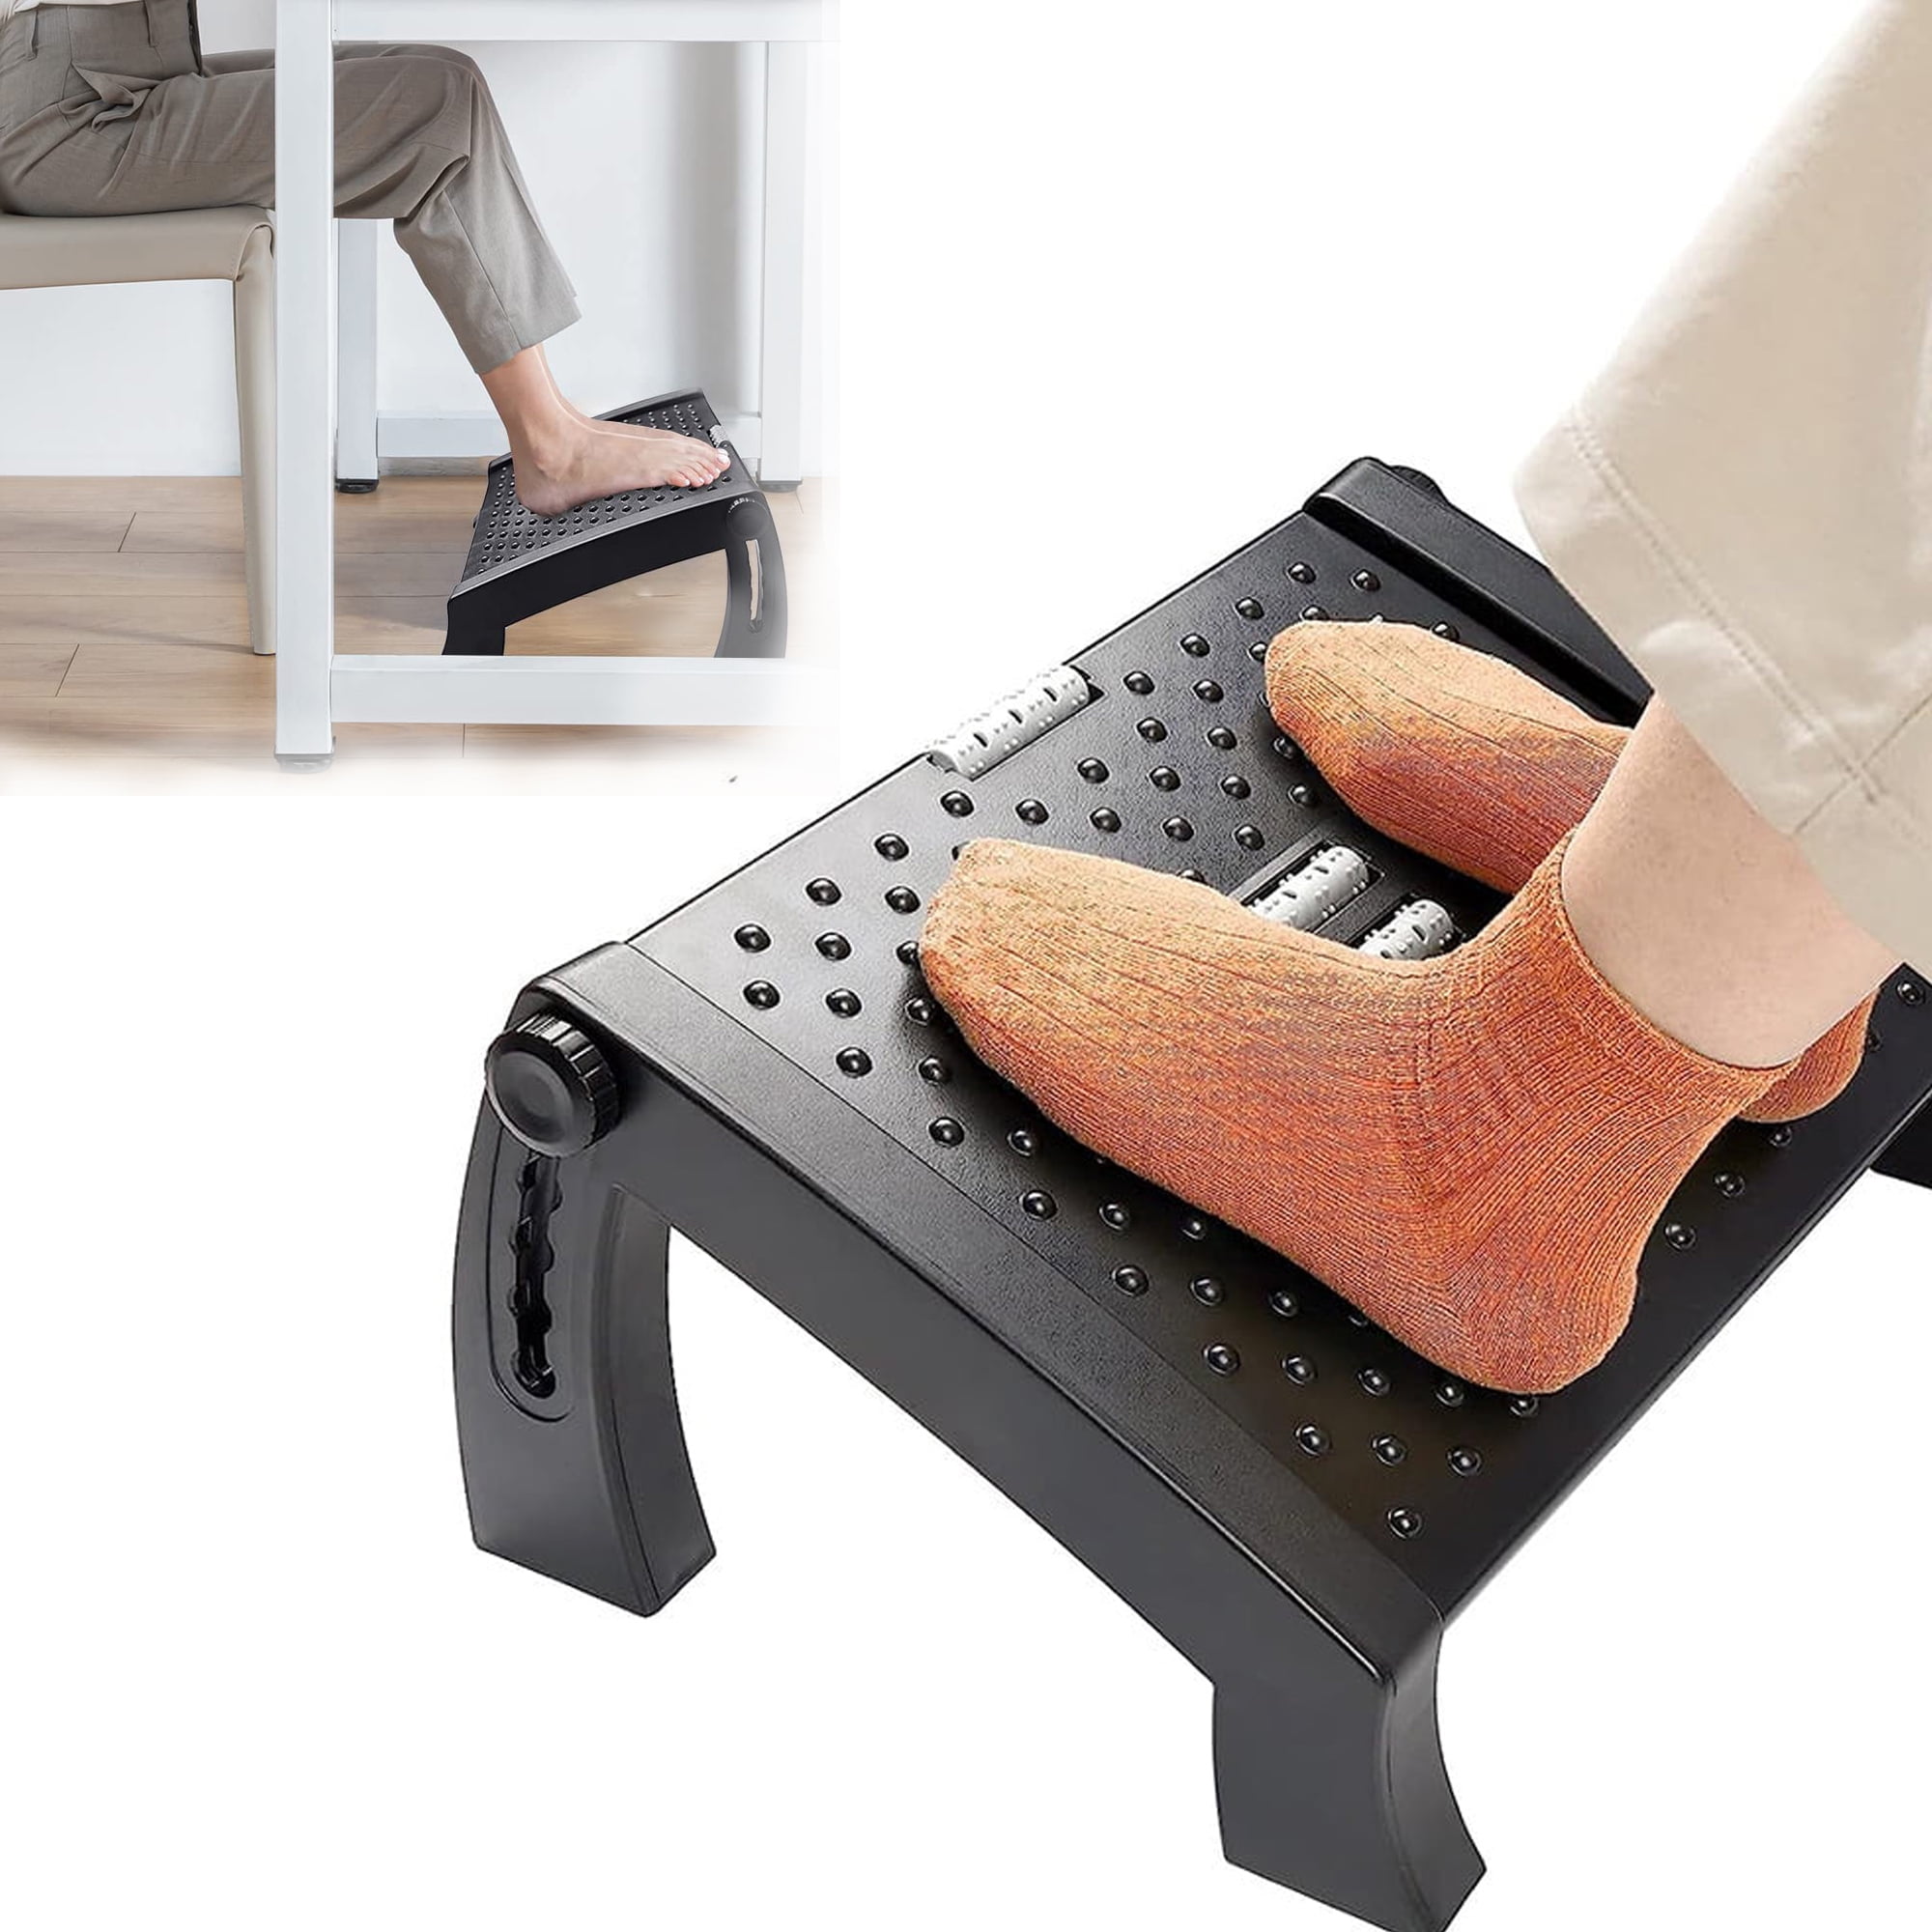 Adjustable Durable Massage Footrest For Improve Posture/Blood Circulation